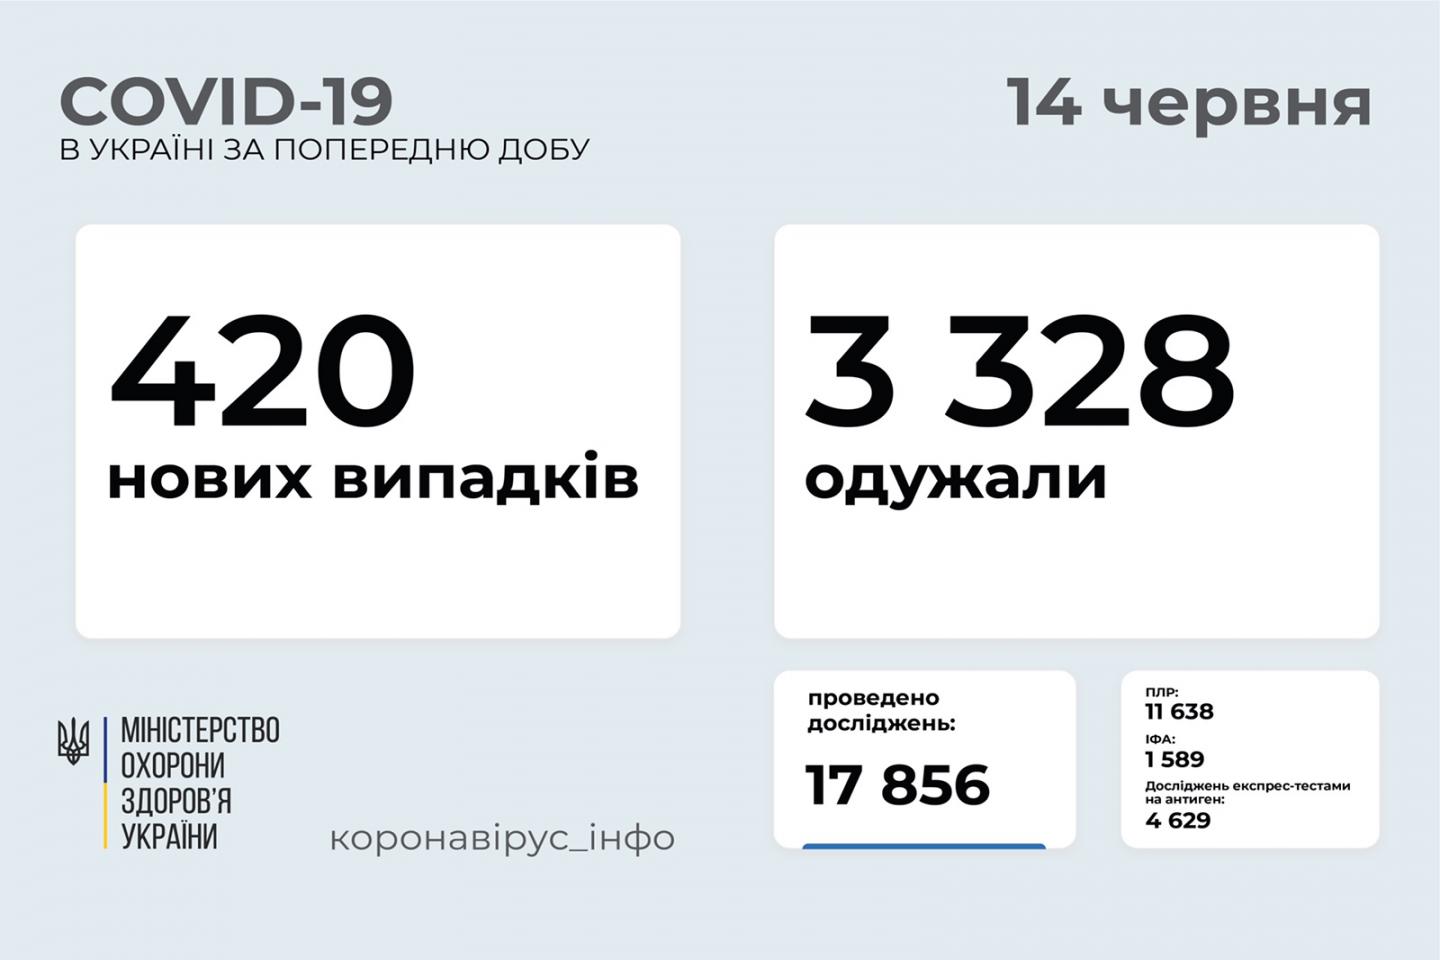 http://dunrada.gov.ua/uploadfile/archive_news/2021/06/14/2021-06-14_7396/images/images-45790.jpg